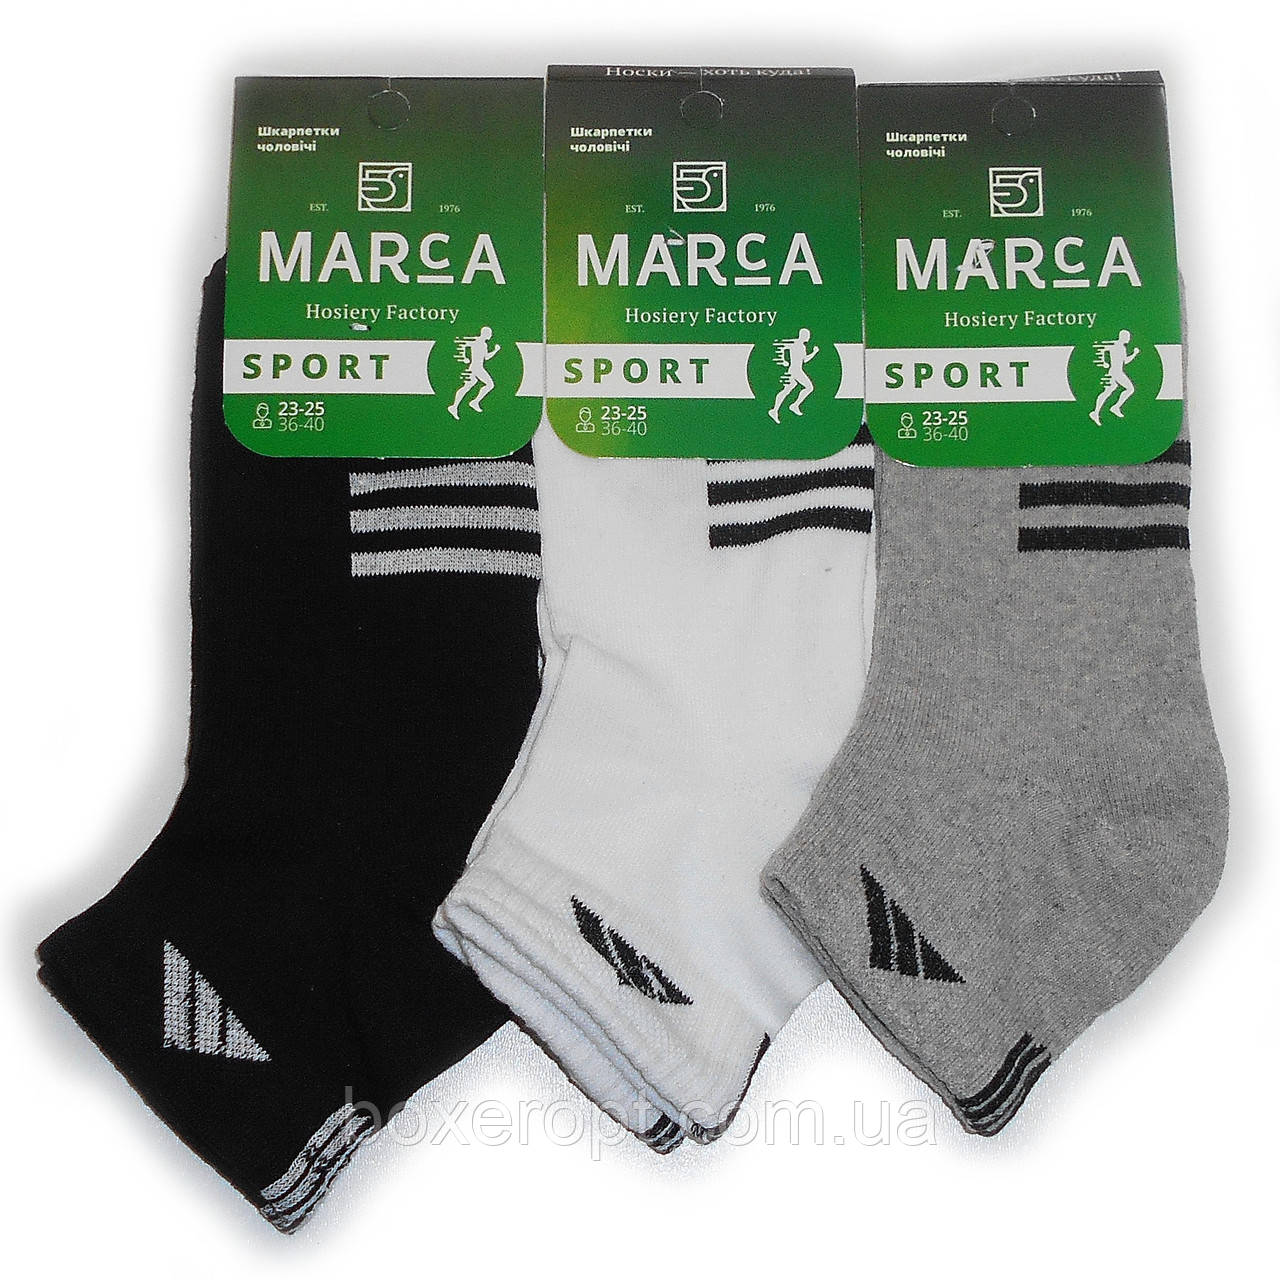 Чоловічі спортивні шкарпетки Marca - 11.50 грн./пара (асорті, Ас.ад.чбс.)